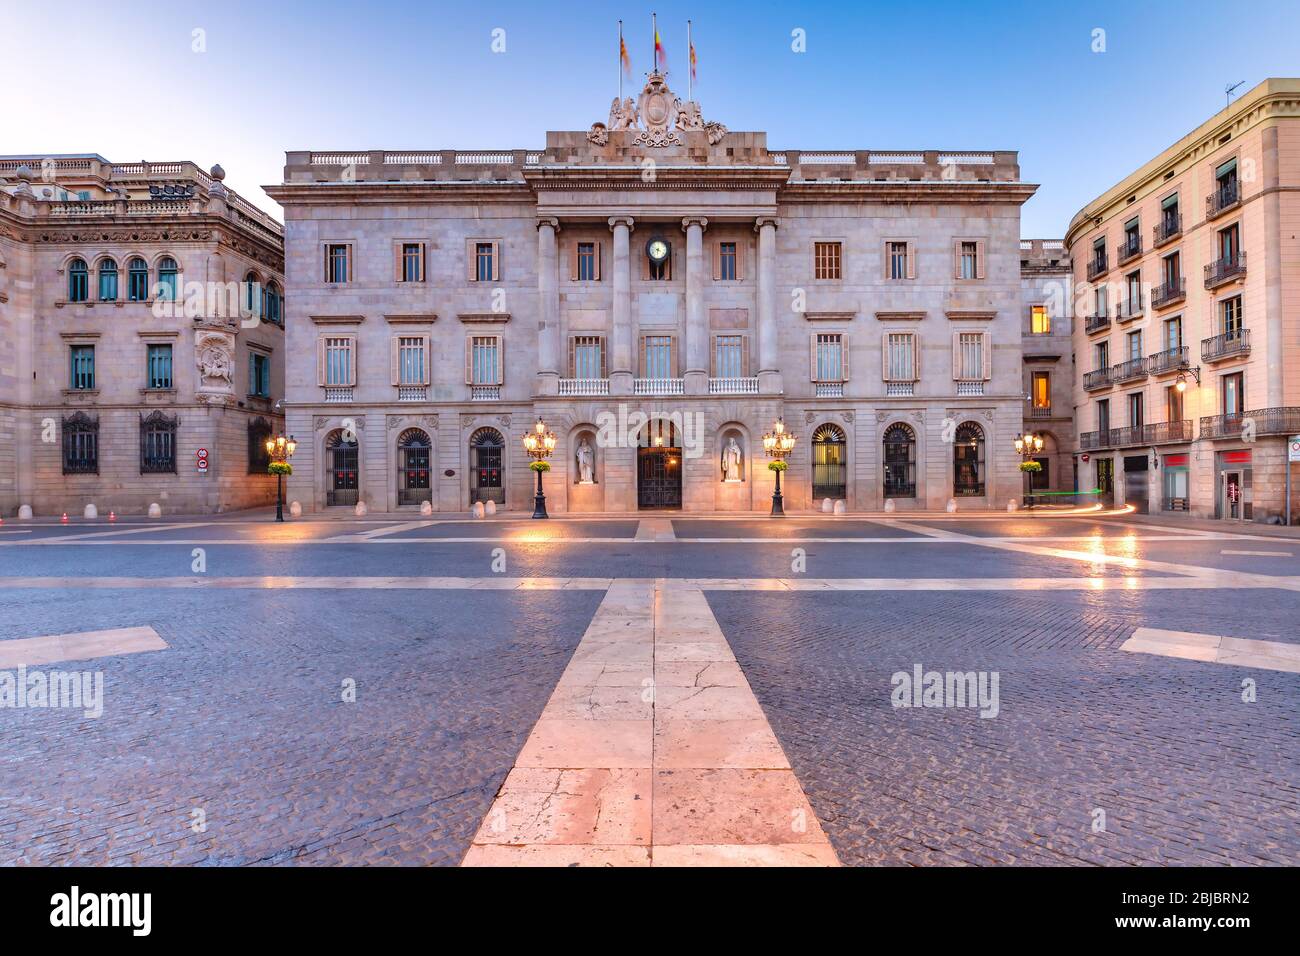 Casa de la Ciutat, Hôtel de Ville de Barcelone sur la Placa de Sant Jaume dans le quartier gothique de Barcelone pendant l'heure de bleu du matin, Espagne Banque D'Images